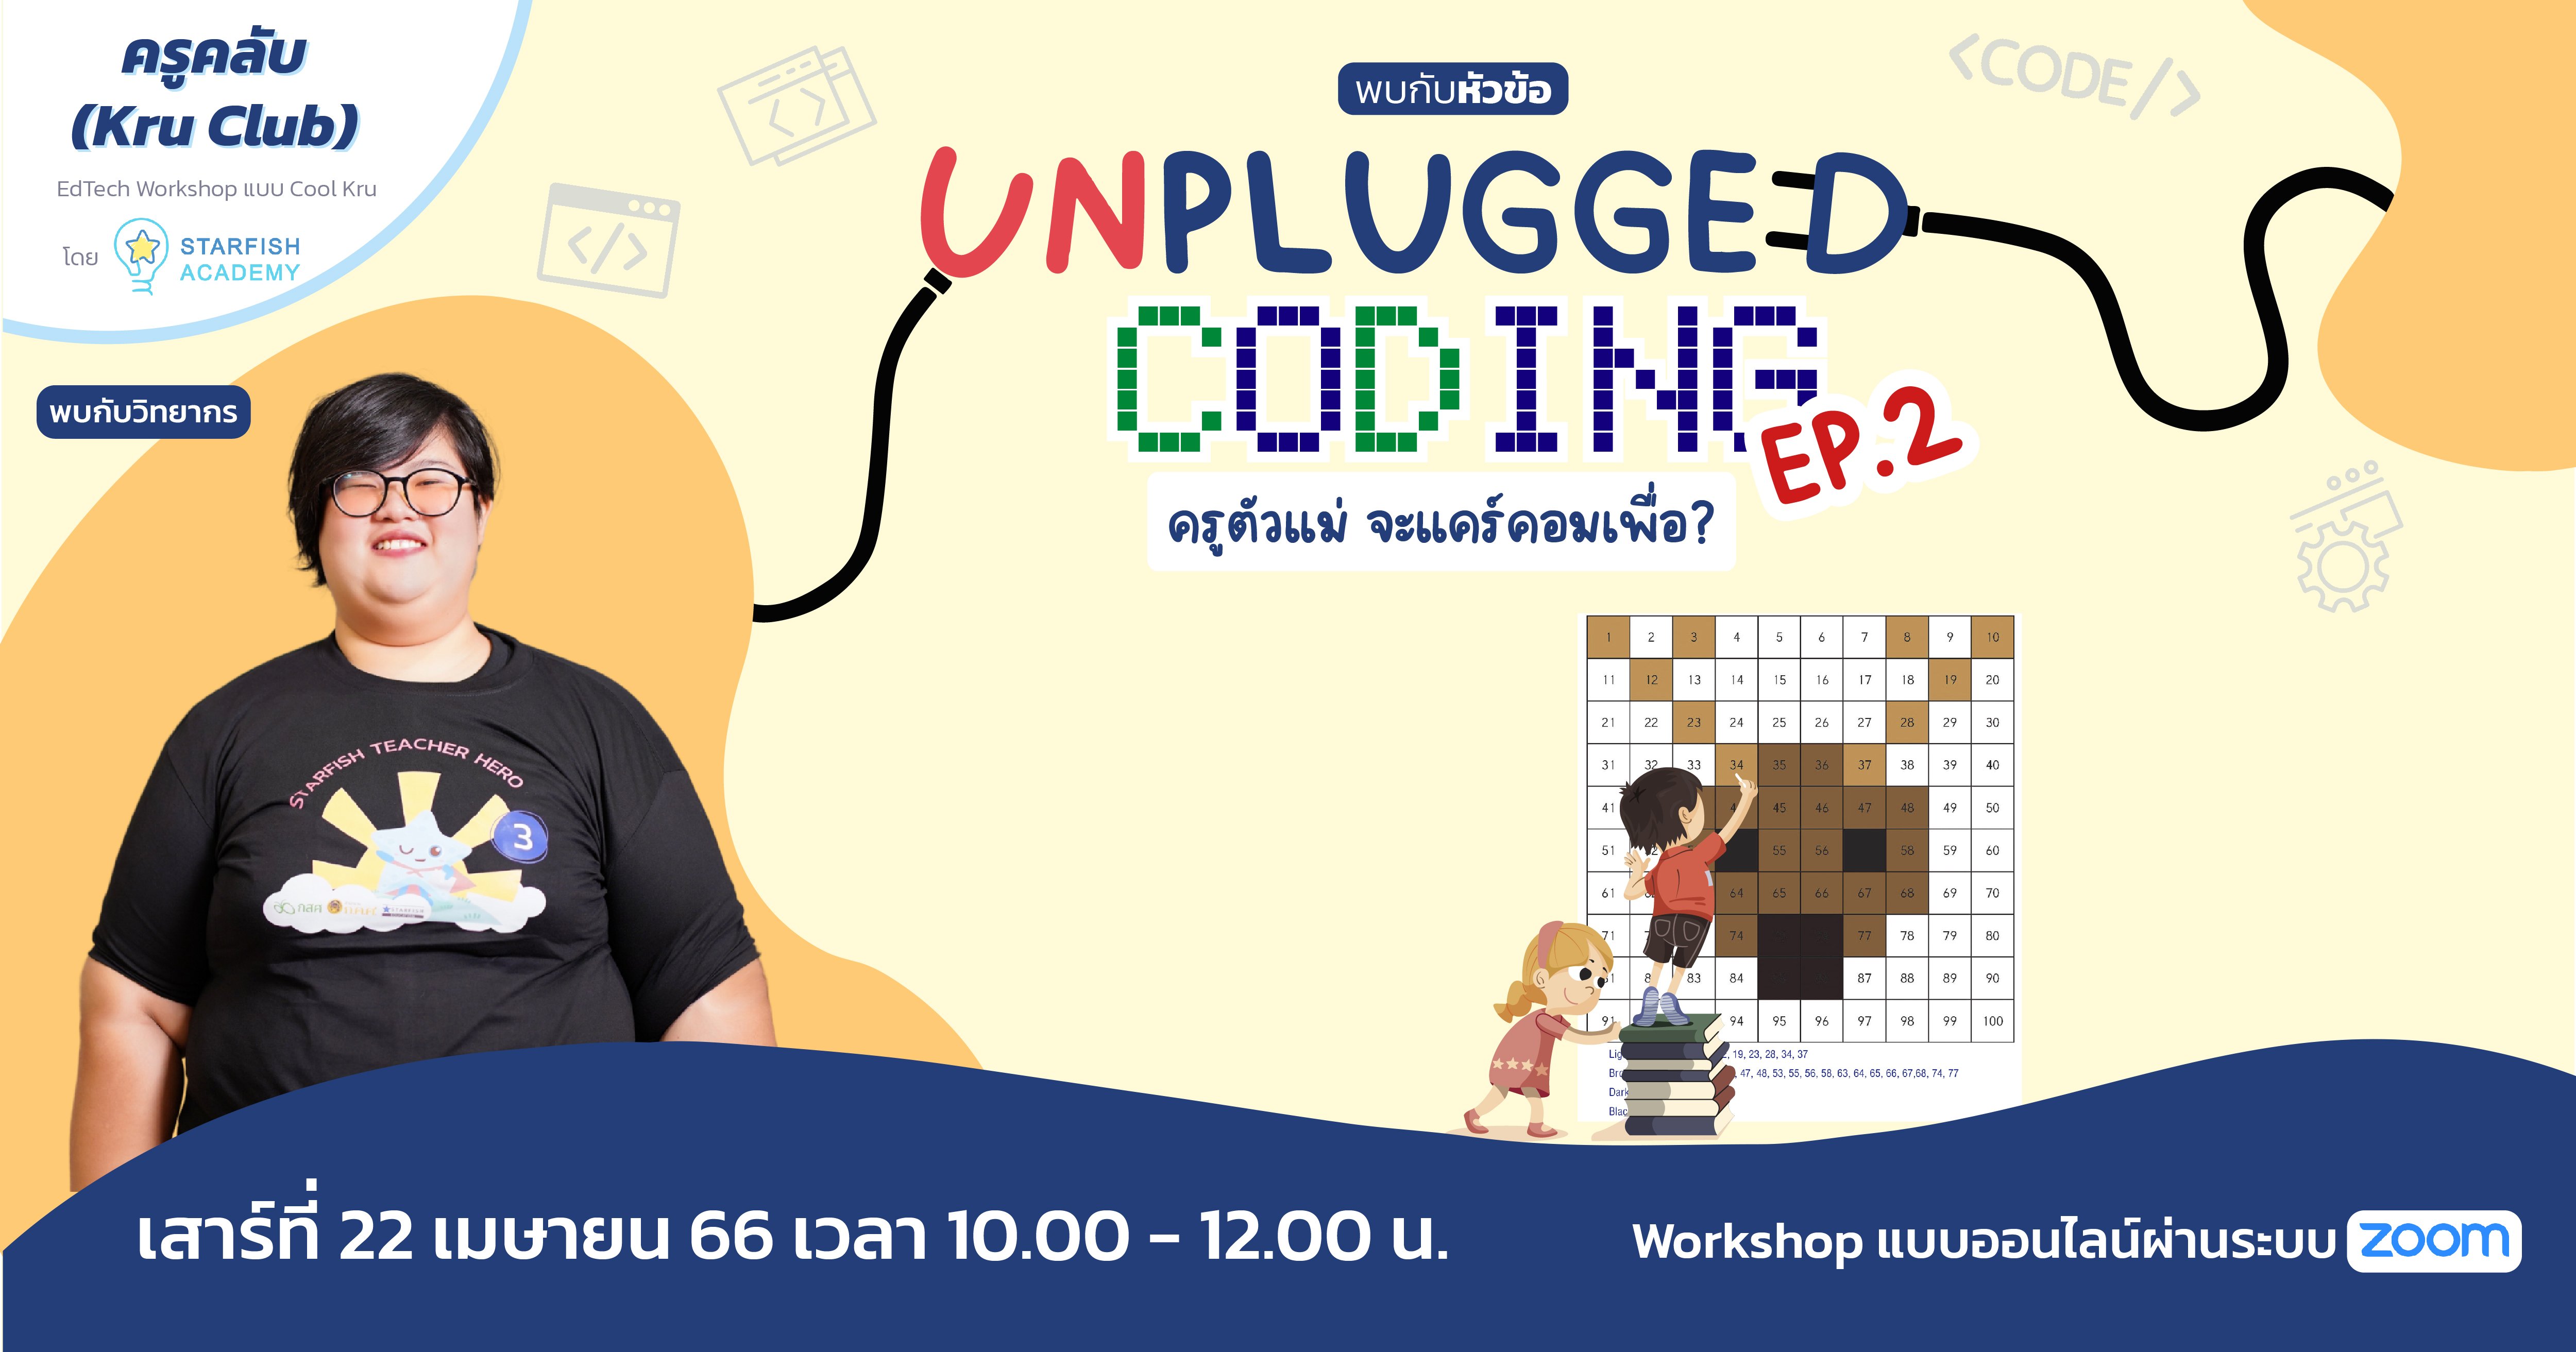 Unplugged Coding: ครูตัวแม่จะแคร์คอมเพื่อ? EP2